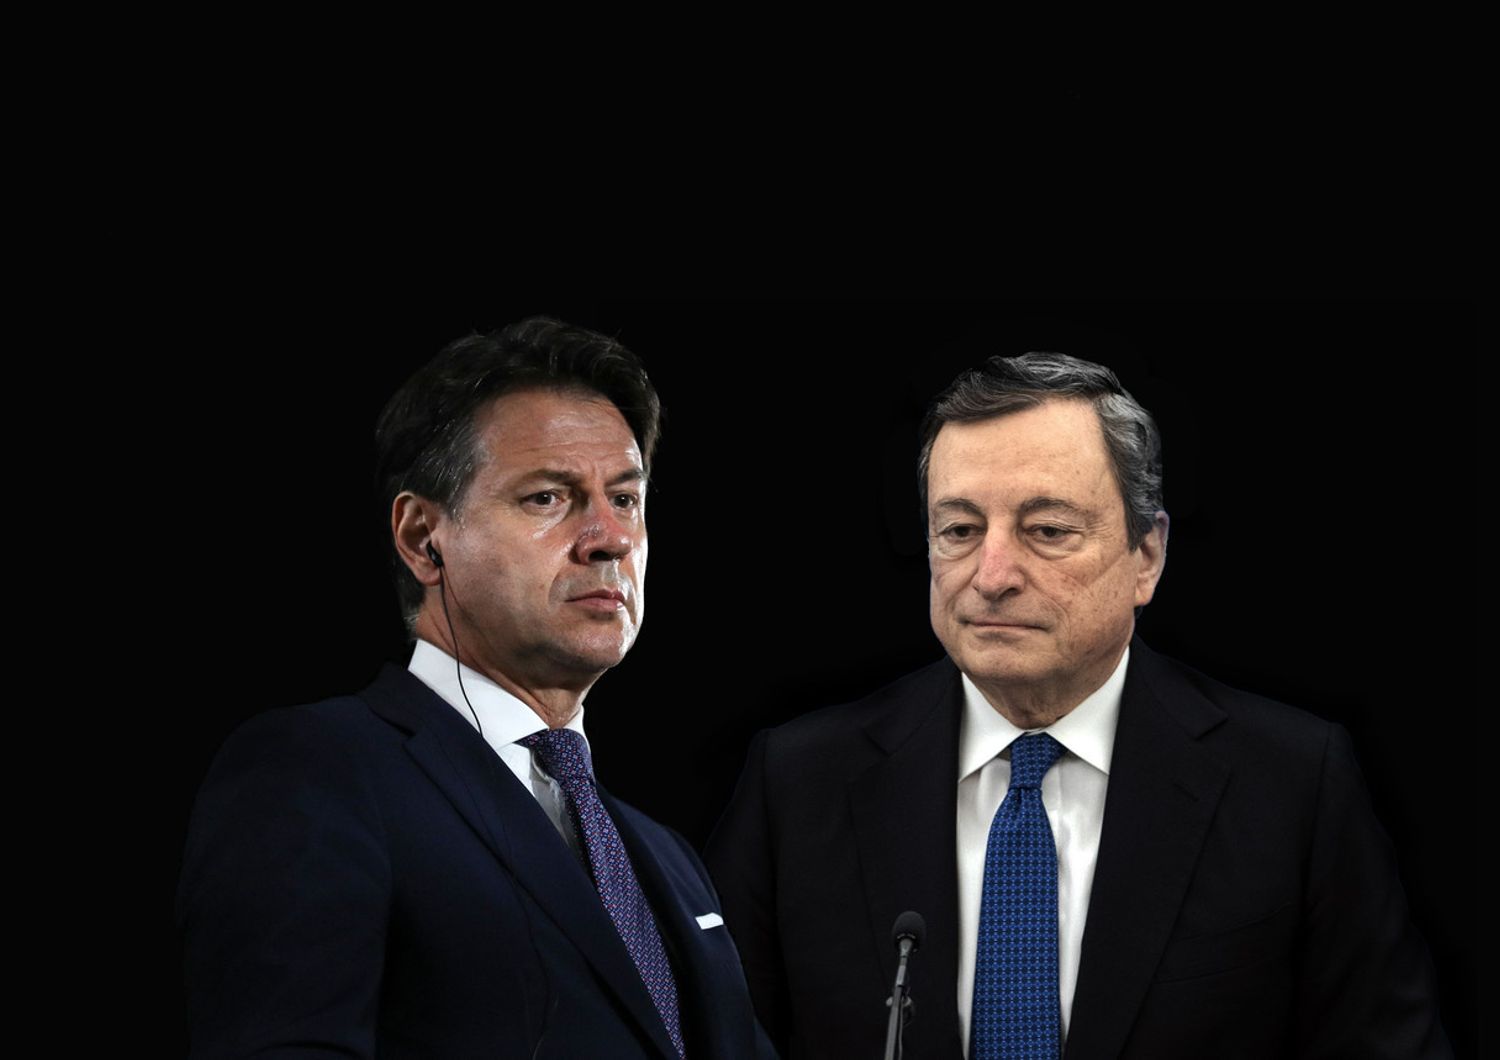 Giuseppe Conte e Mario Draghi&nbsp;